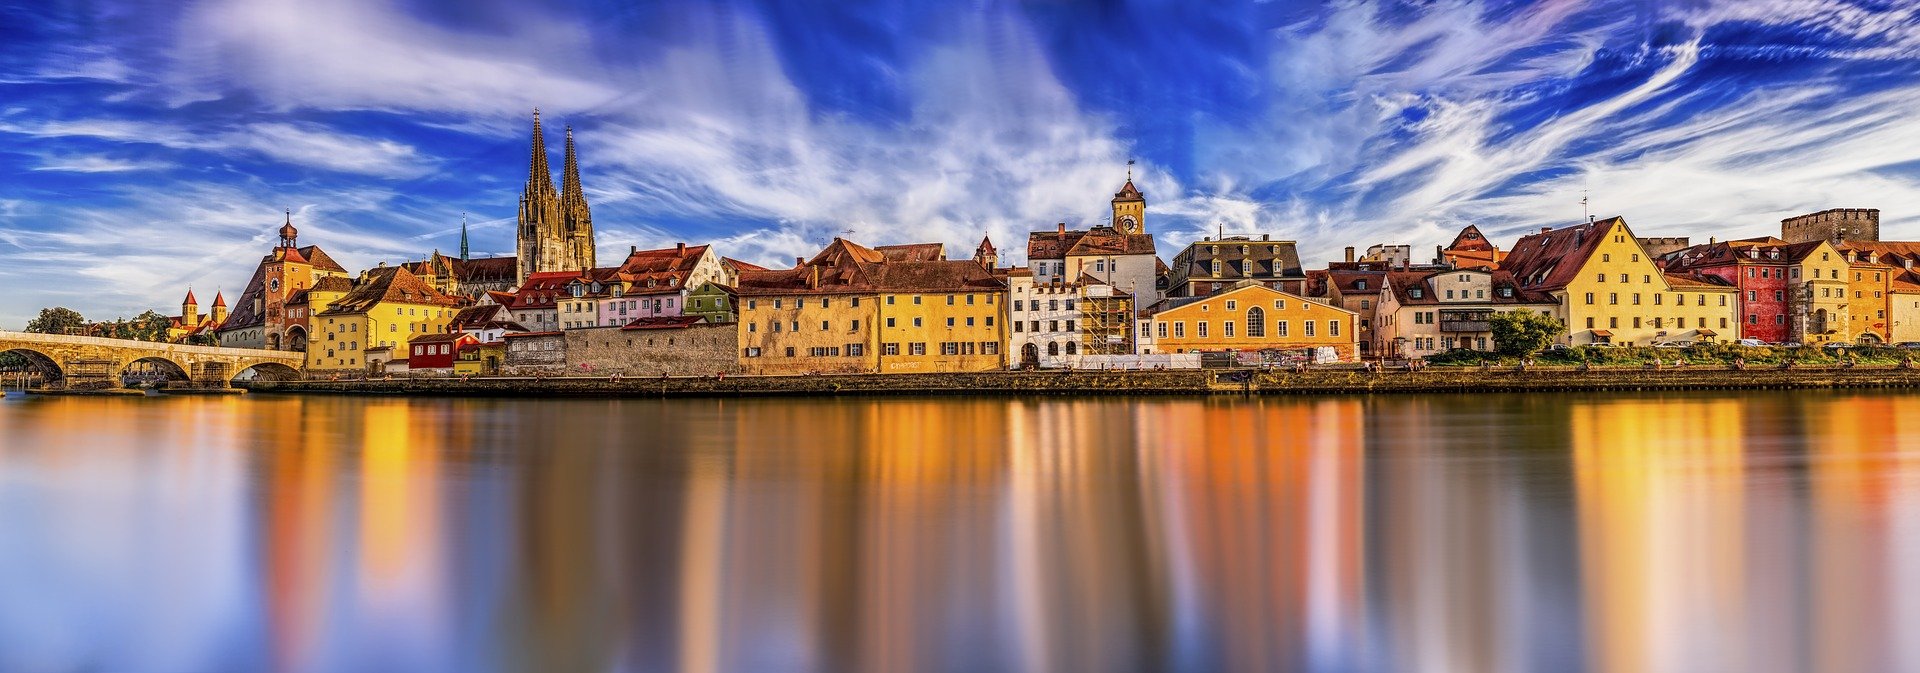 Regensburg Panorama / Pixabay